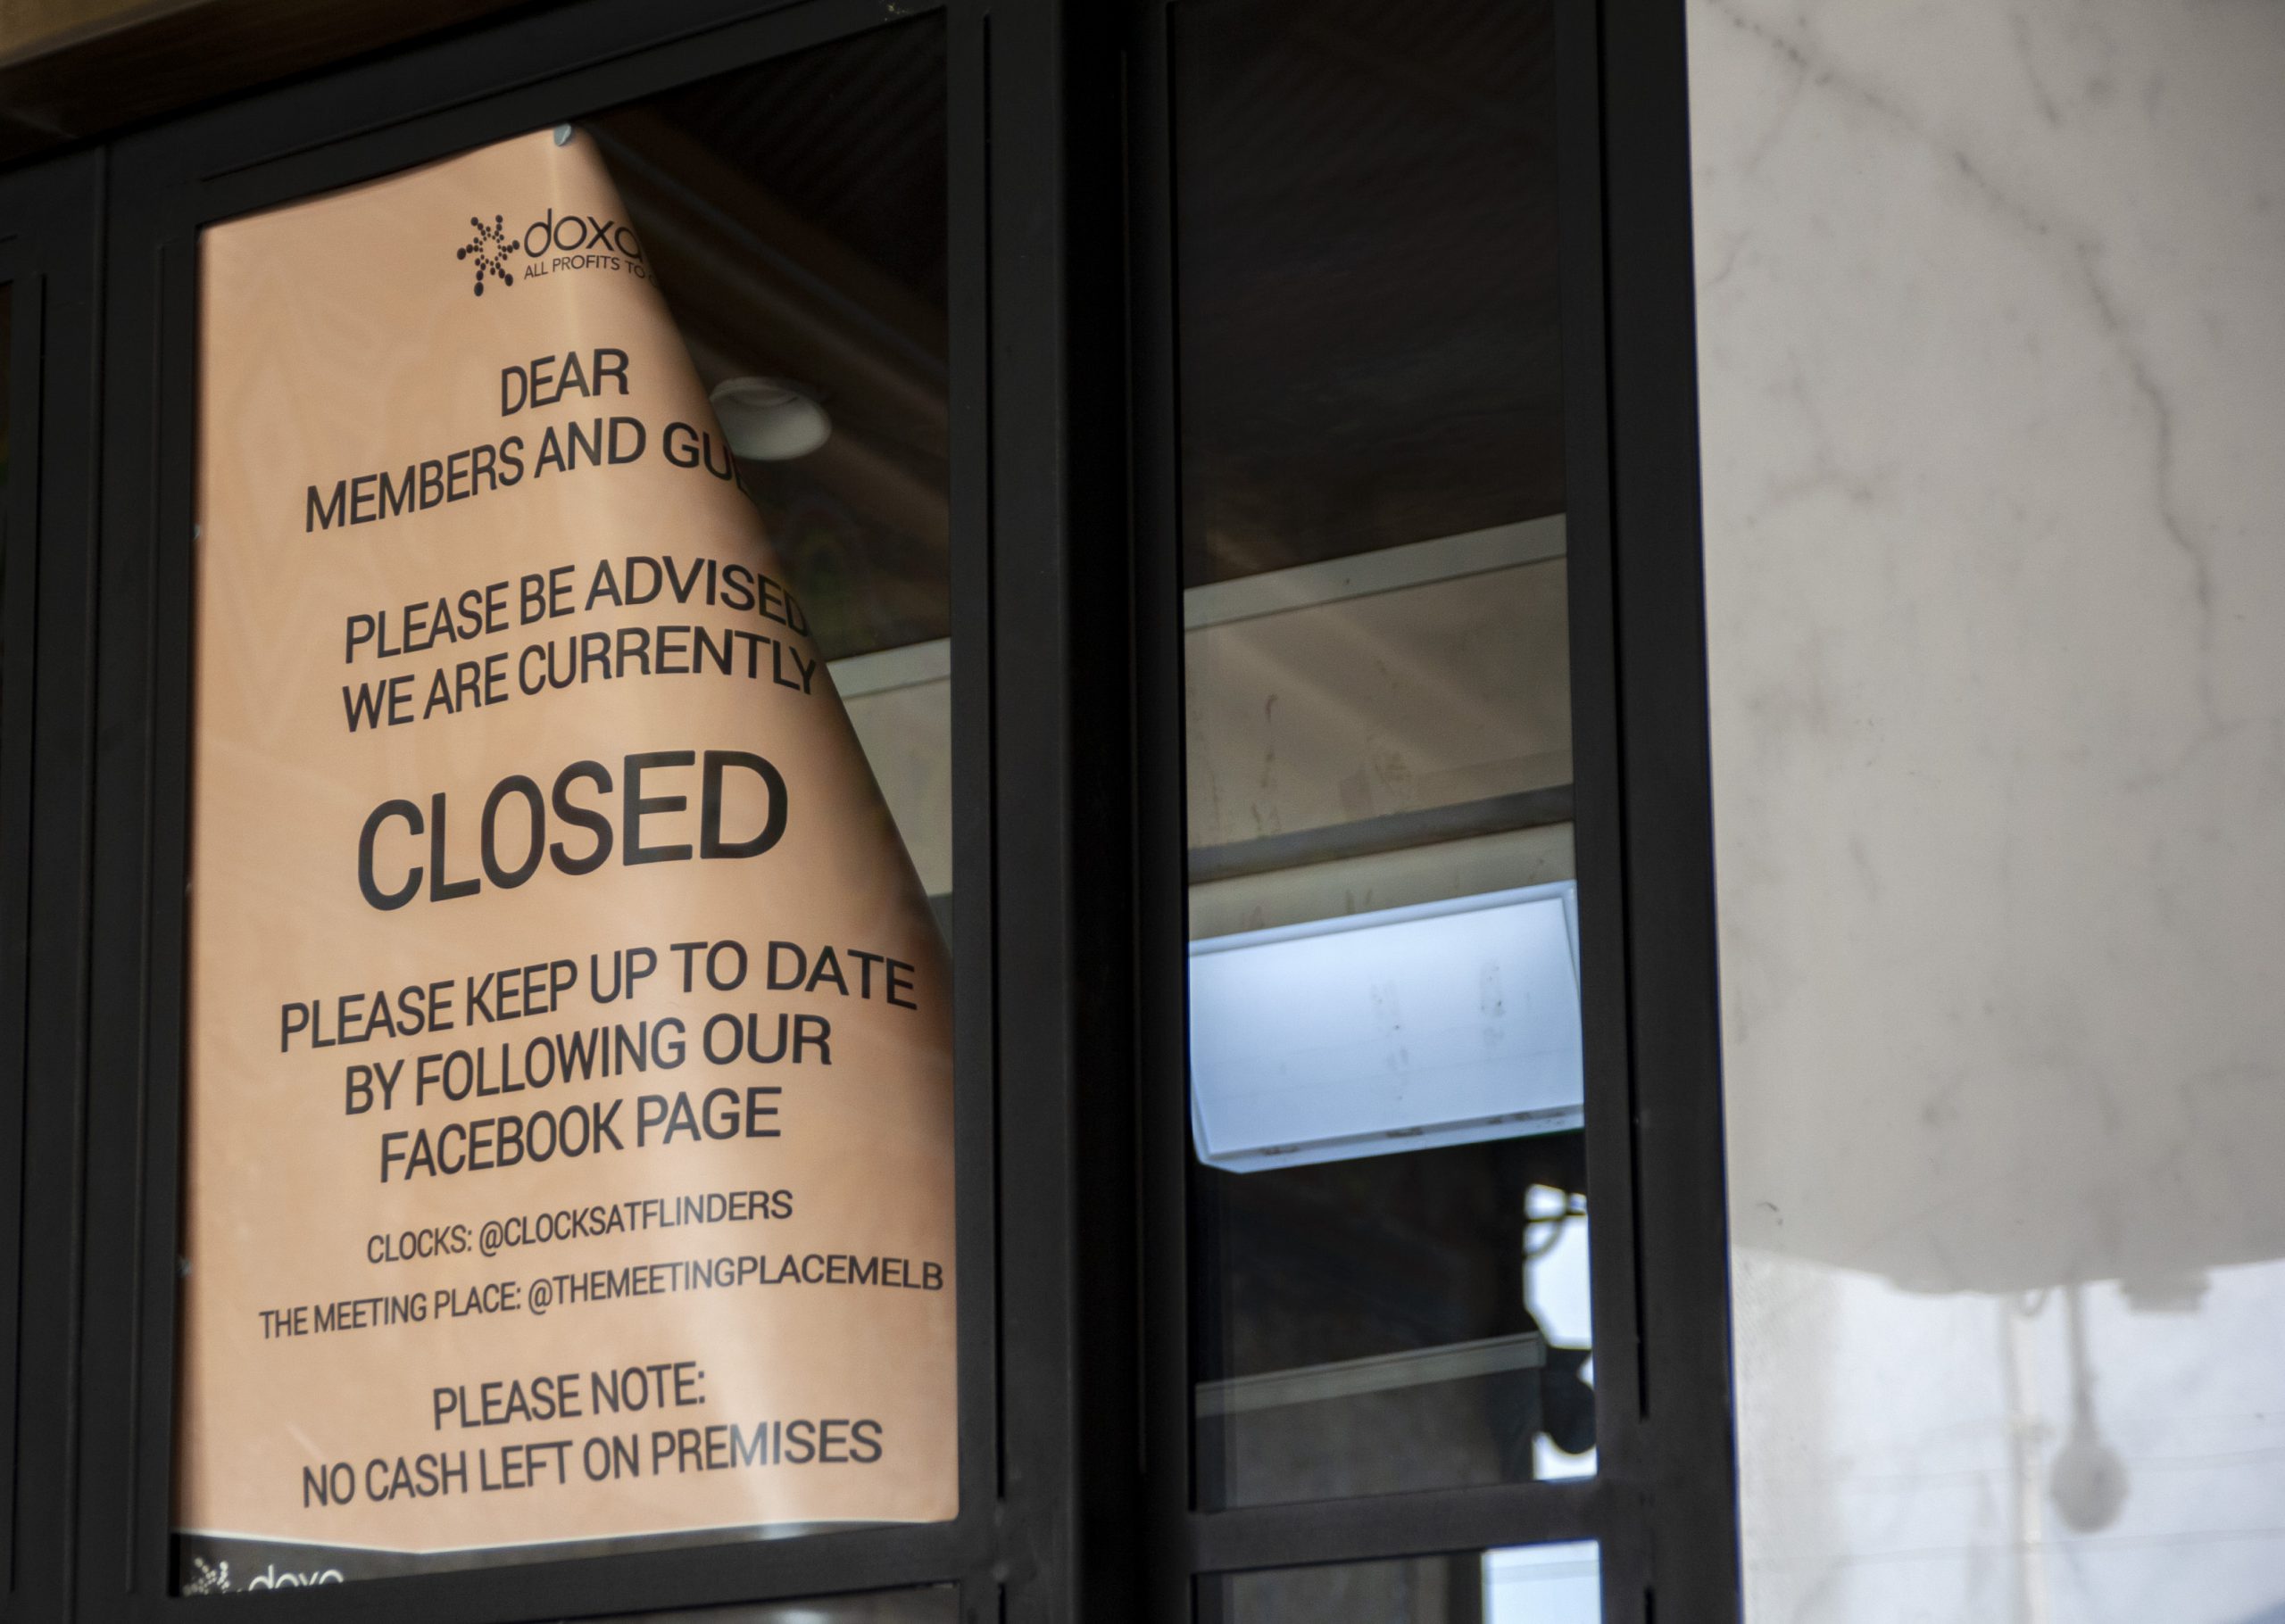 Plakat w oknie, z ogłoszeniem o zamknięciu lokalu w związku z pandemią